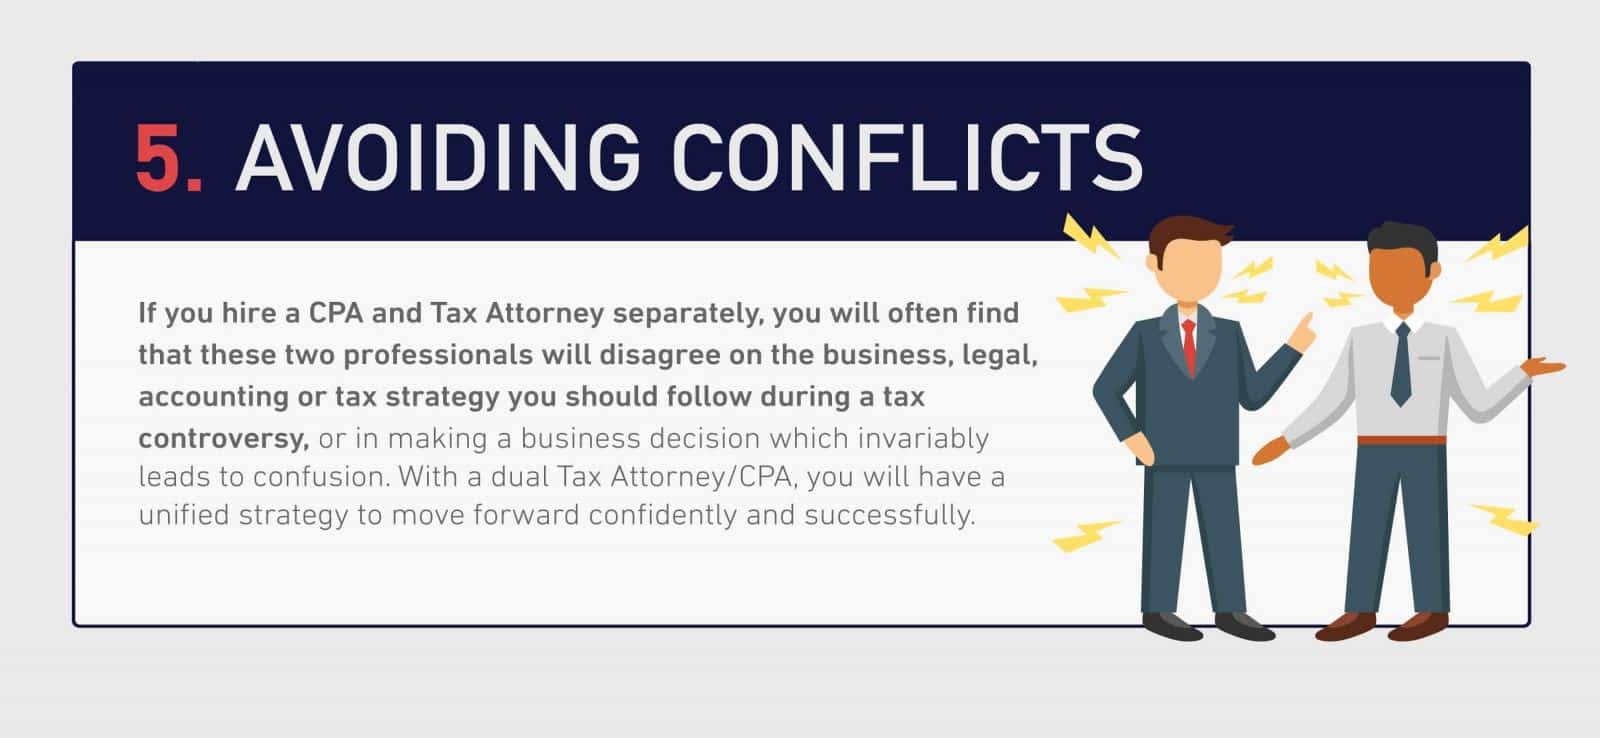 Avoiding-conflicts-klasing-associates-santa-barbara-tax-attorney